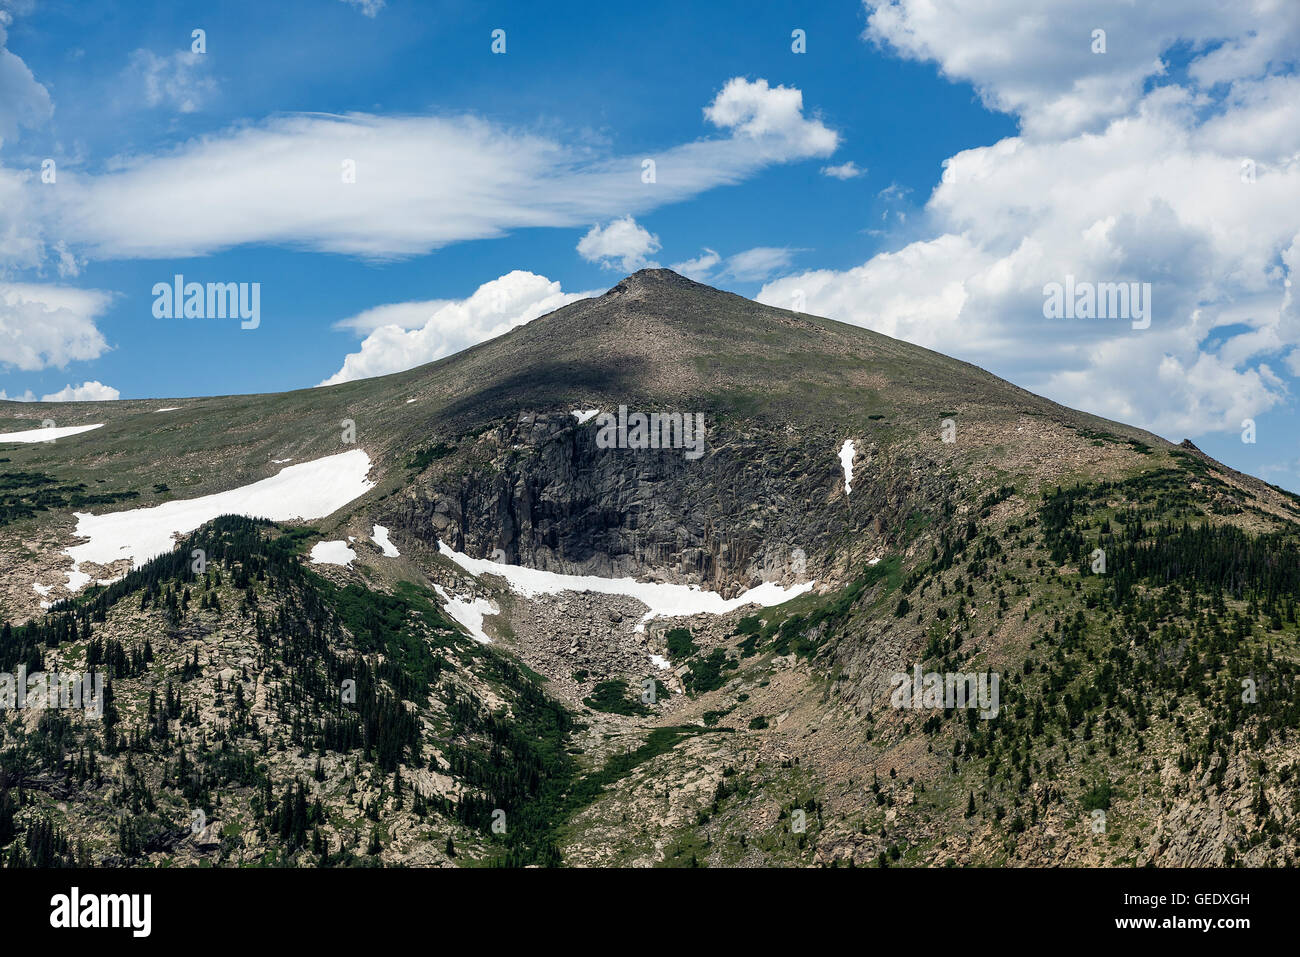 Mountain peak in Rocky Mountain National Park, Colorado, USA Stock Photo